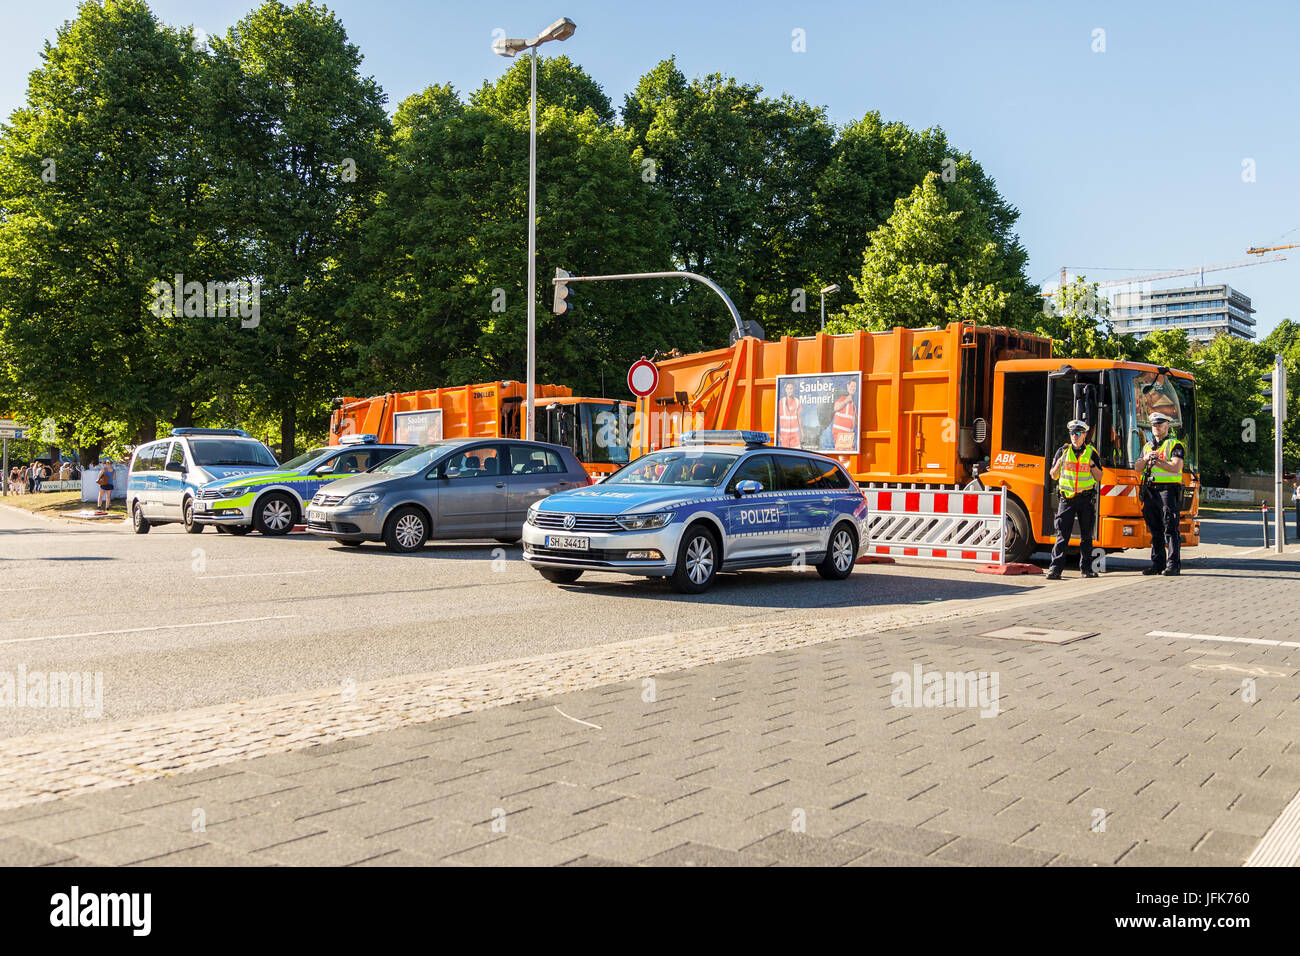 Kiel/Deutschland - vom 20. Juni 2017: Fahrzeuge der Polizei und Müllabfuhr steht auf der Straße in der Nähe der öffentliche Veranstaltung Kieler Woche. Stockfoto